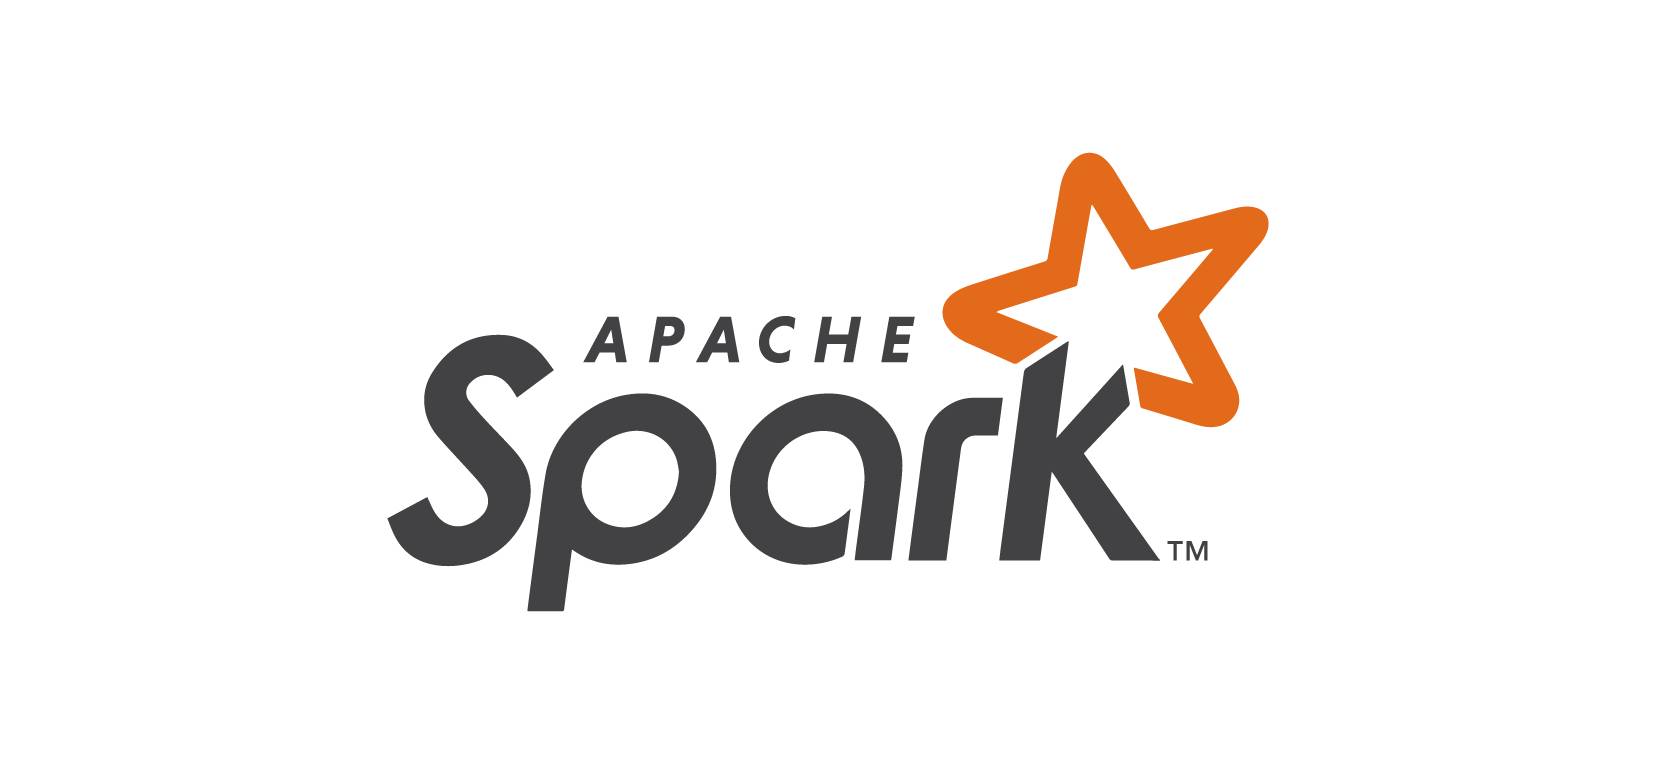 Apache Spark là gì? Những tính năng nổi bật của Apache Spark